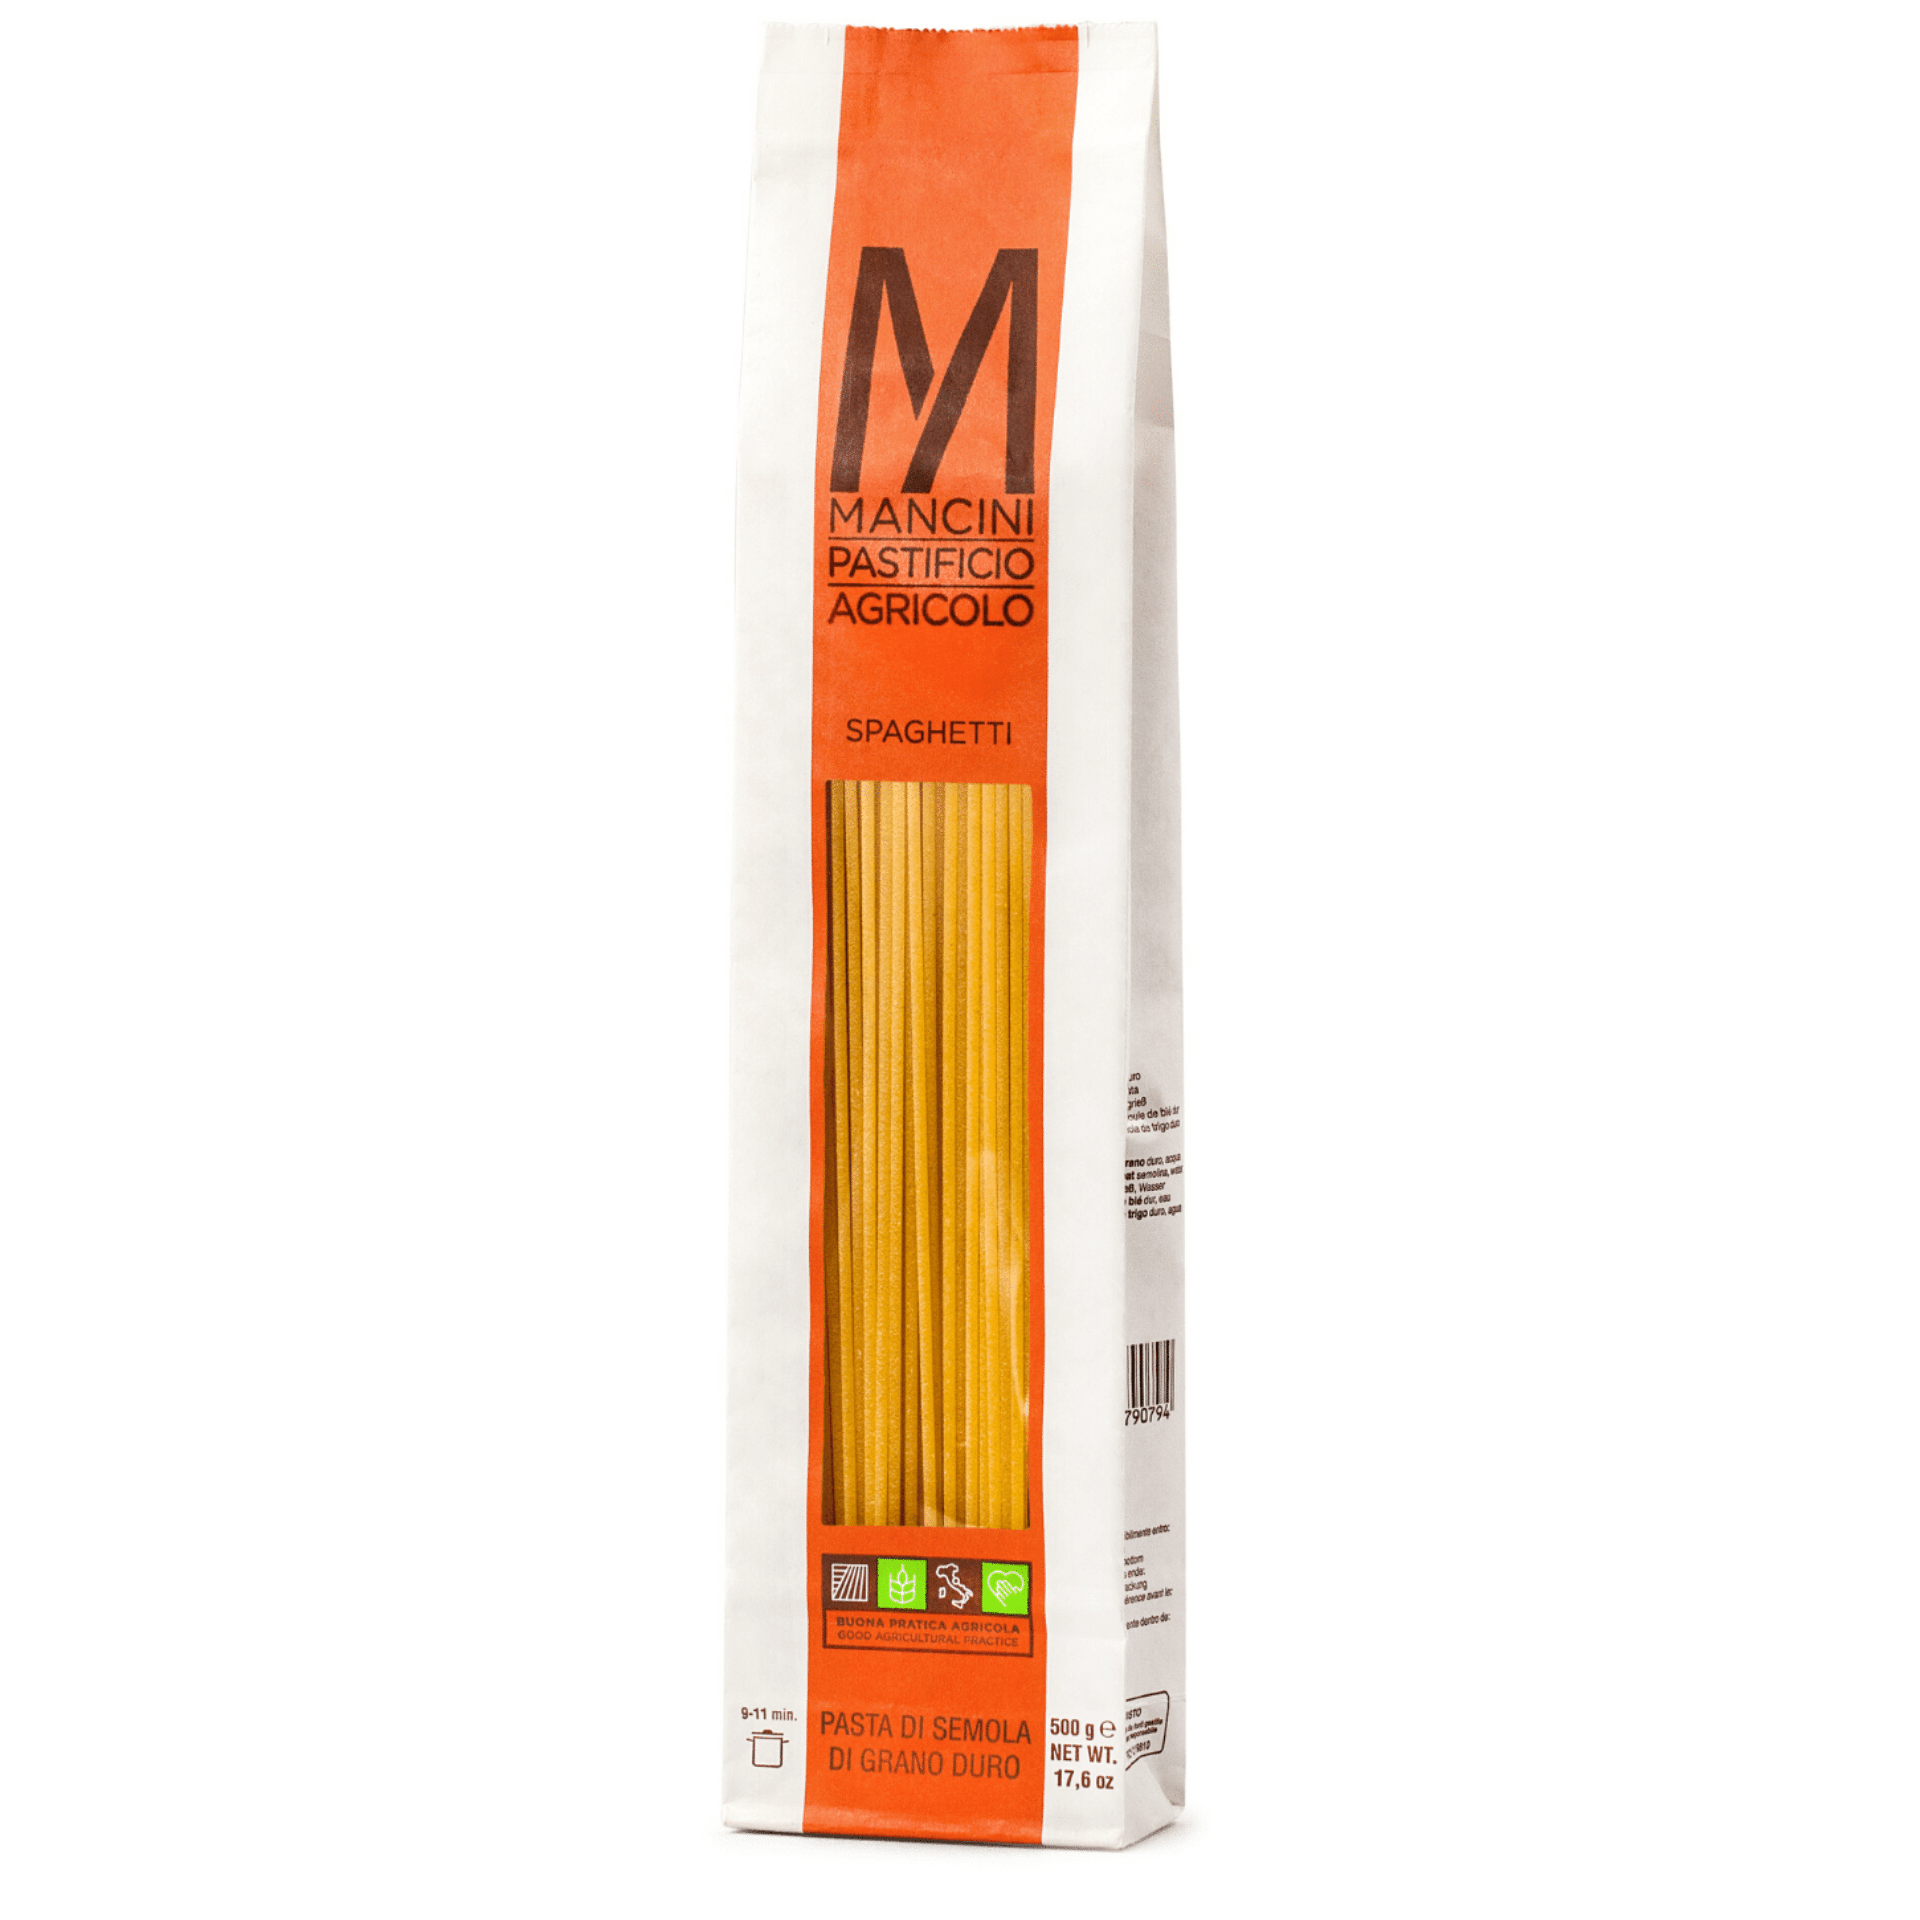 Tasty Ribbon Spaghetti by Pastificio Mancini